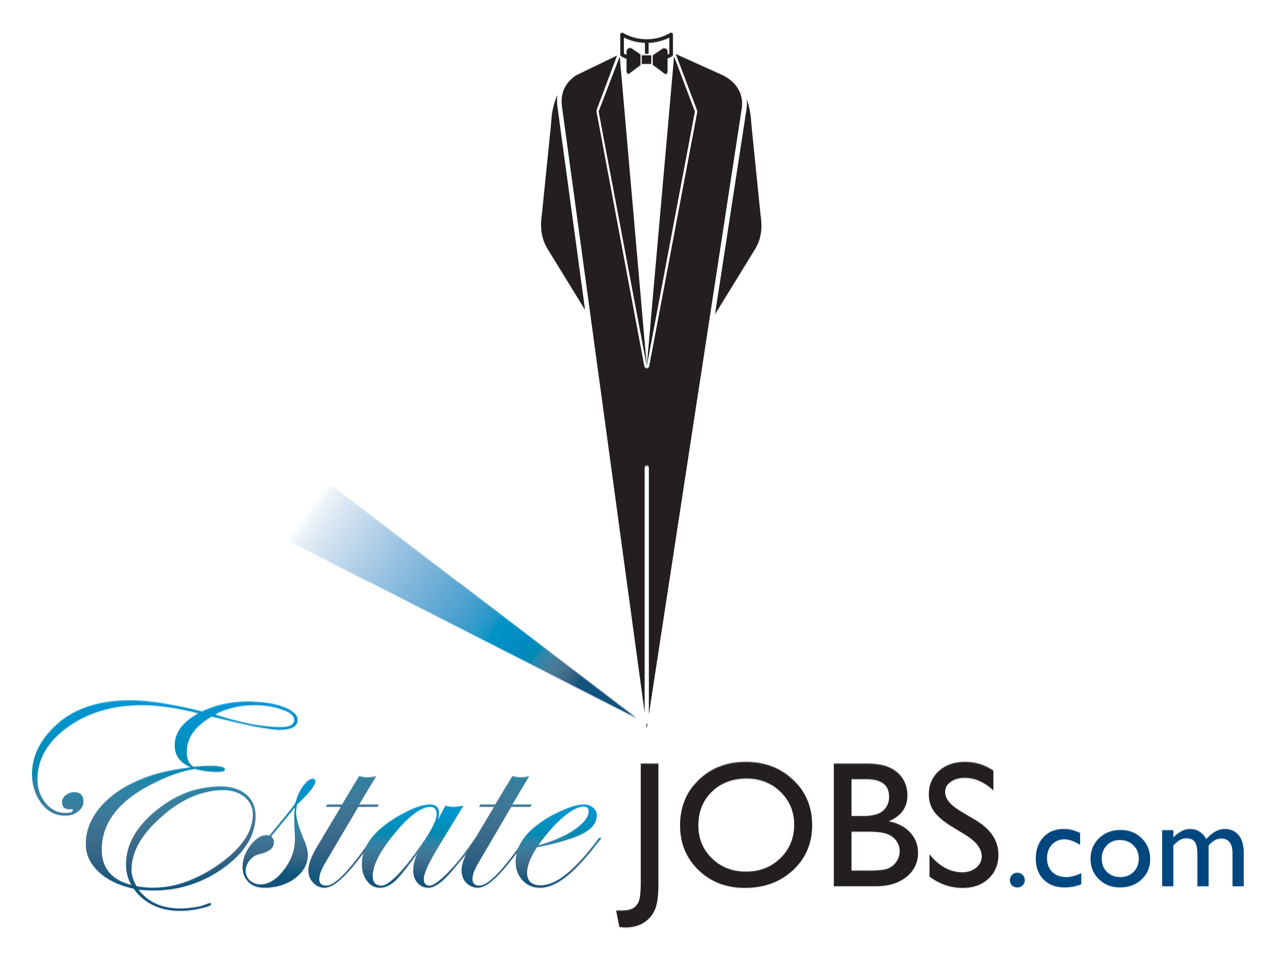 EstateJobs.com logo